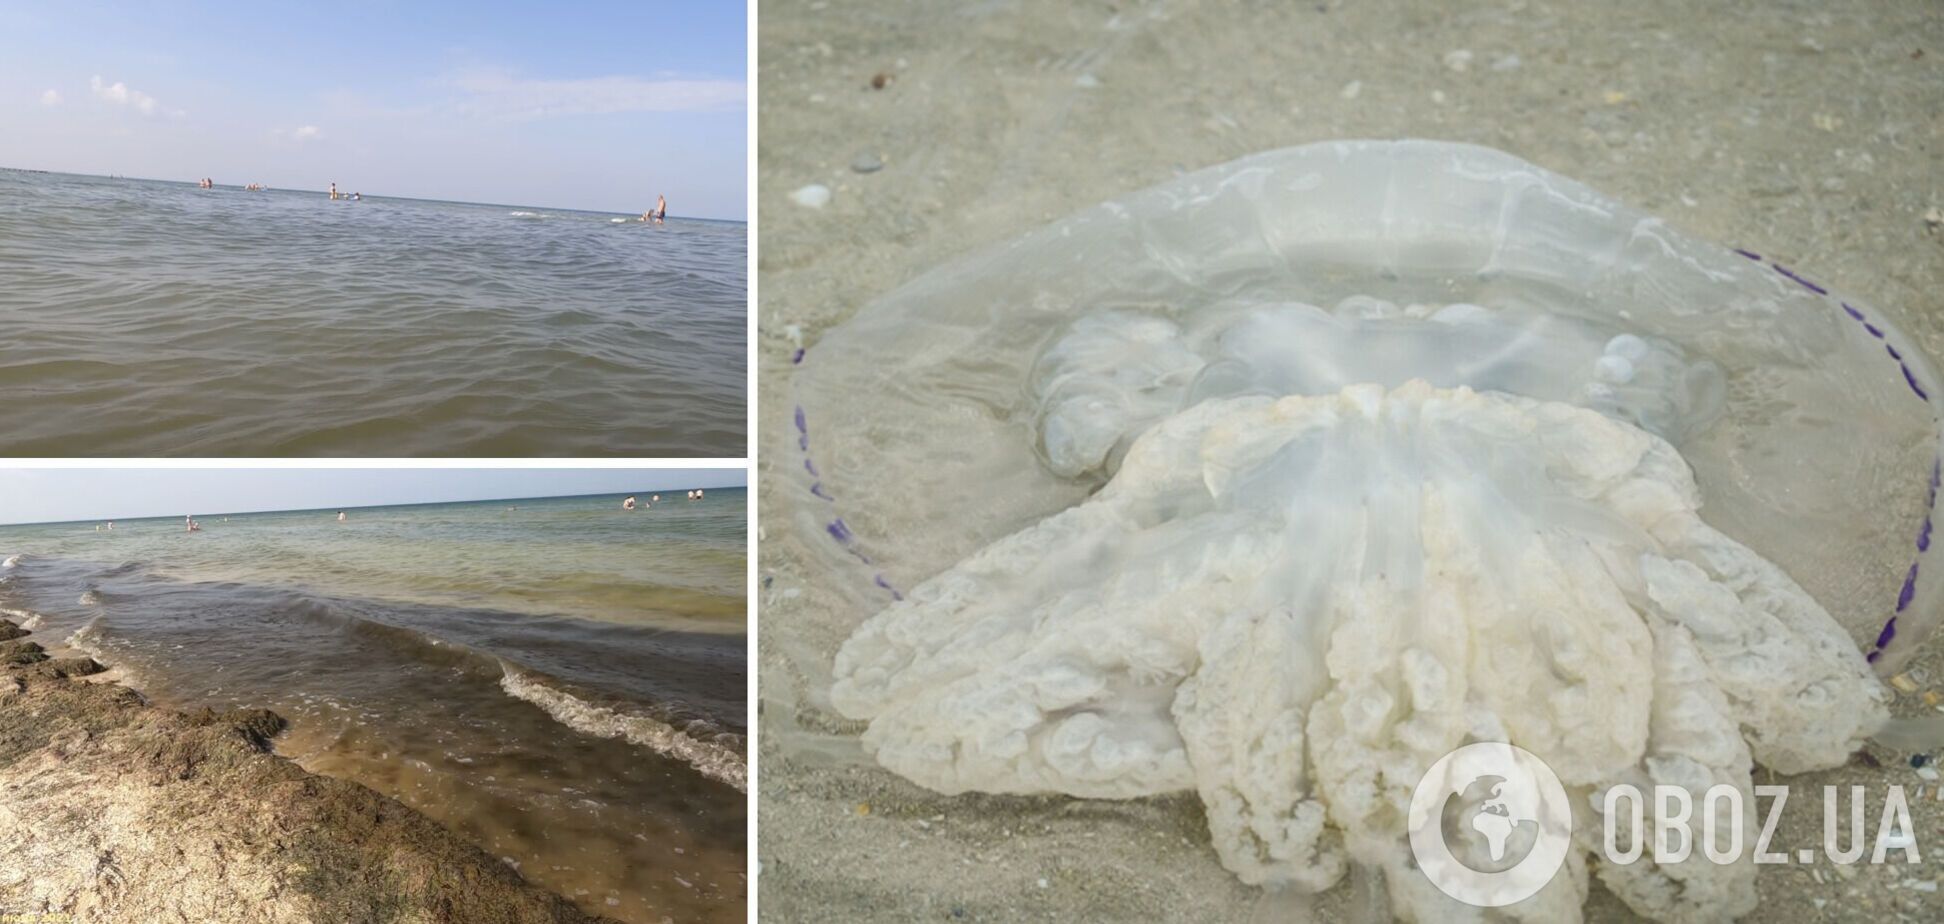 Вдоль Азовского побережья появляются большие медузы